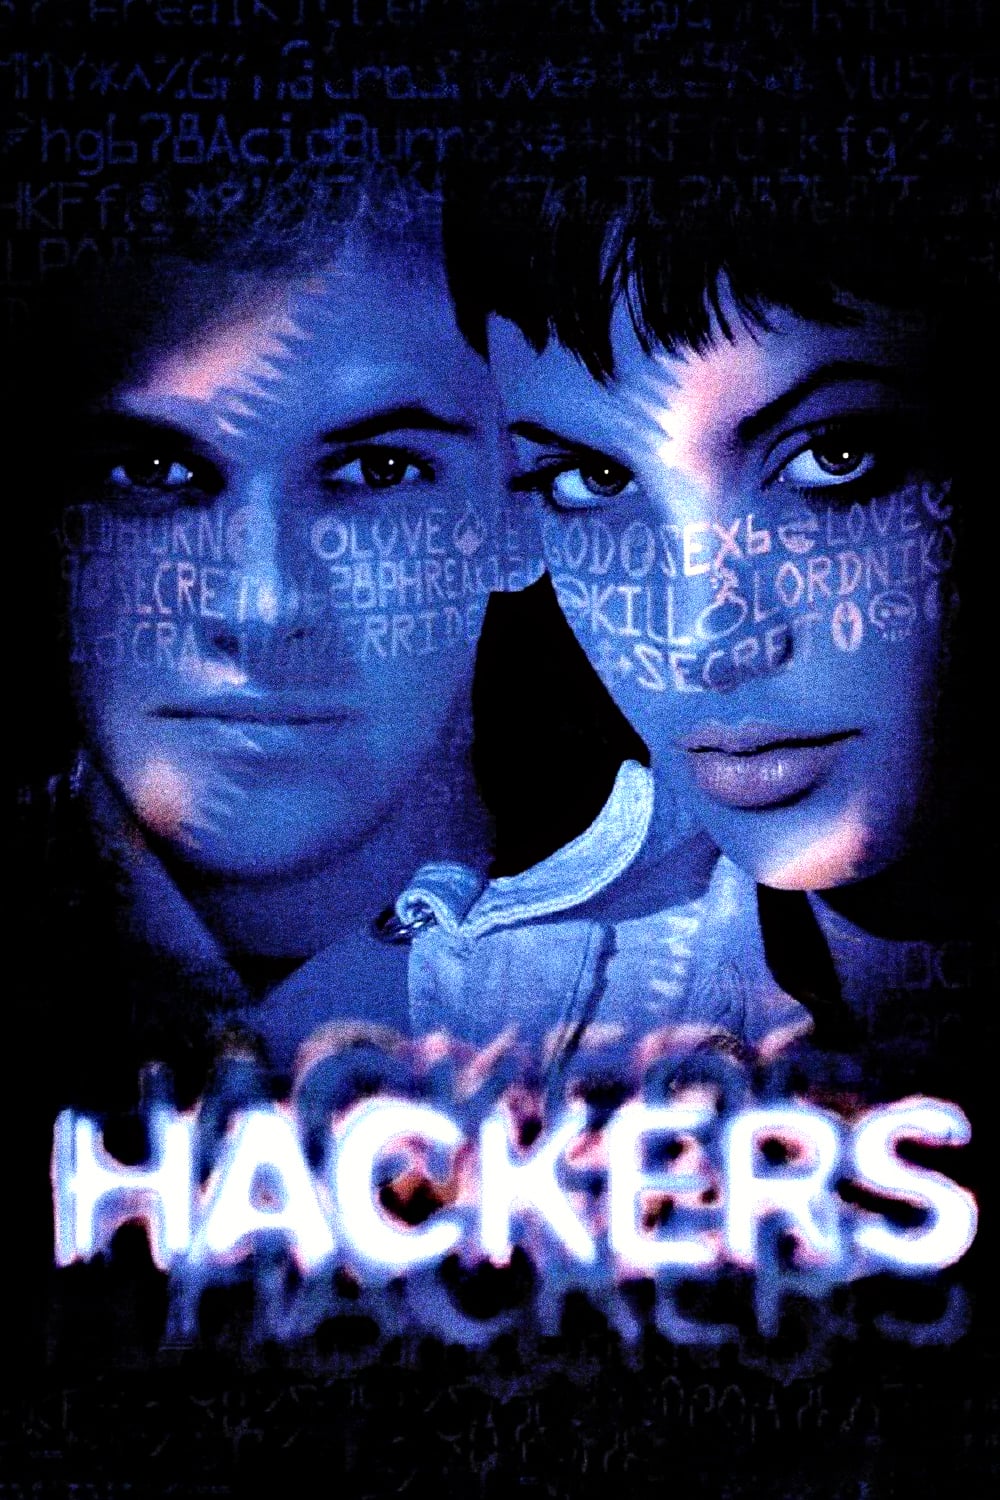 постер Хакеры